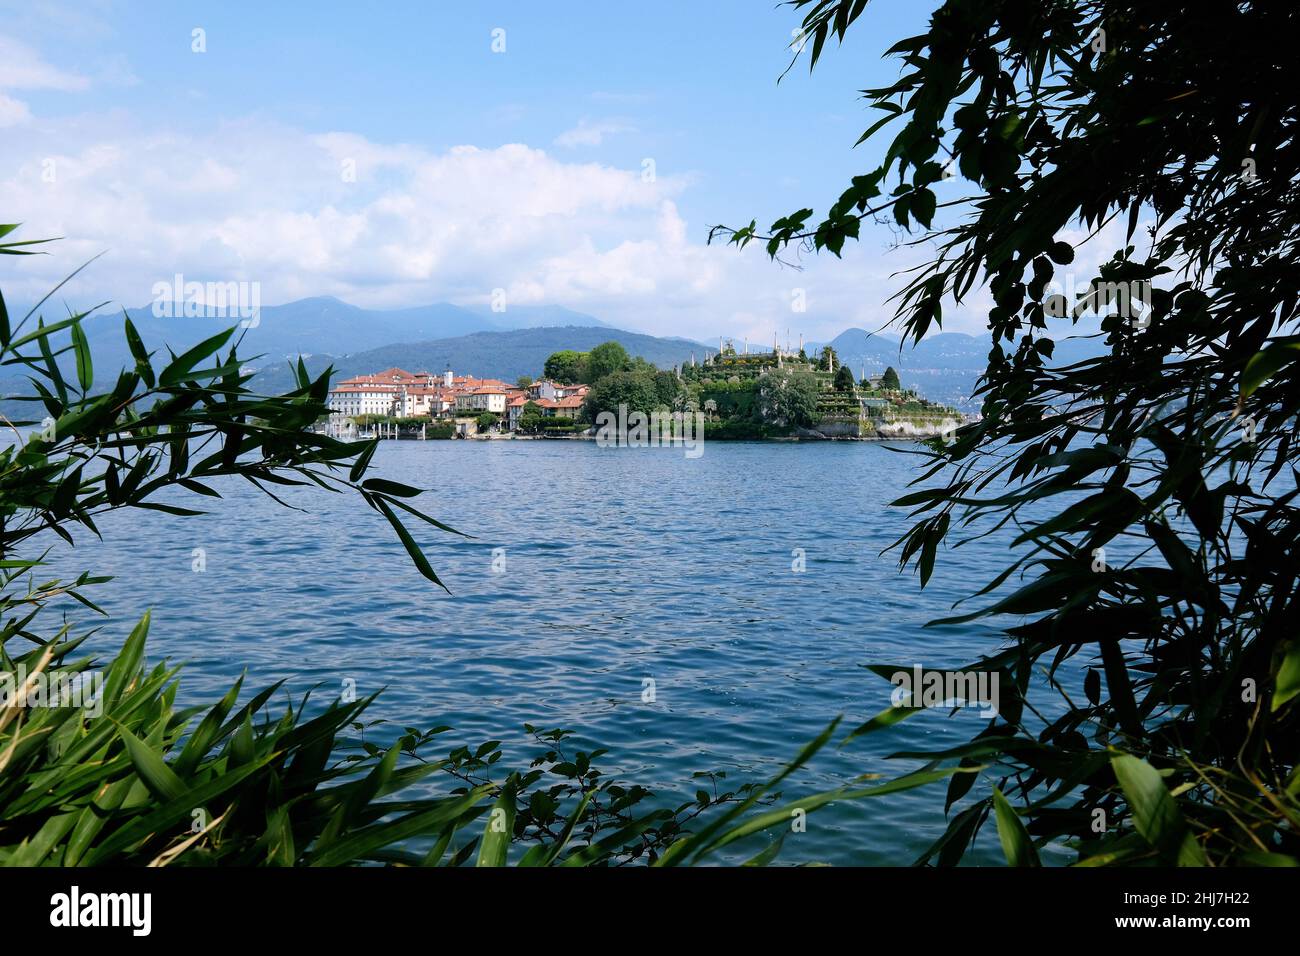 Reisen, Europa, Italien, Piemont; Insel Isola Bella im Lago Maggiore mit dem Palazzo Borromeo und dem botanischen Garten. Stockfoto